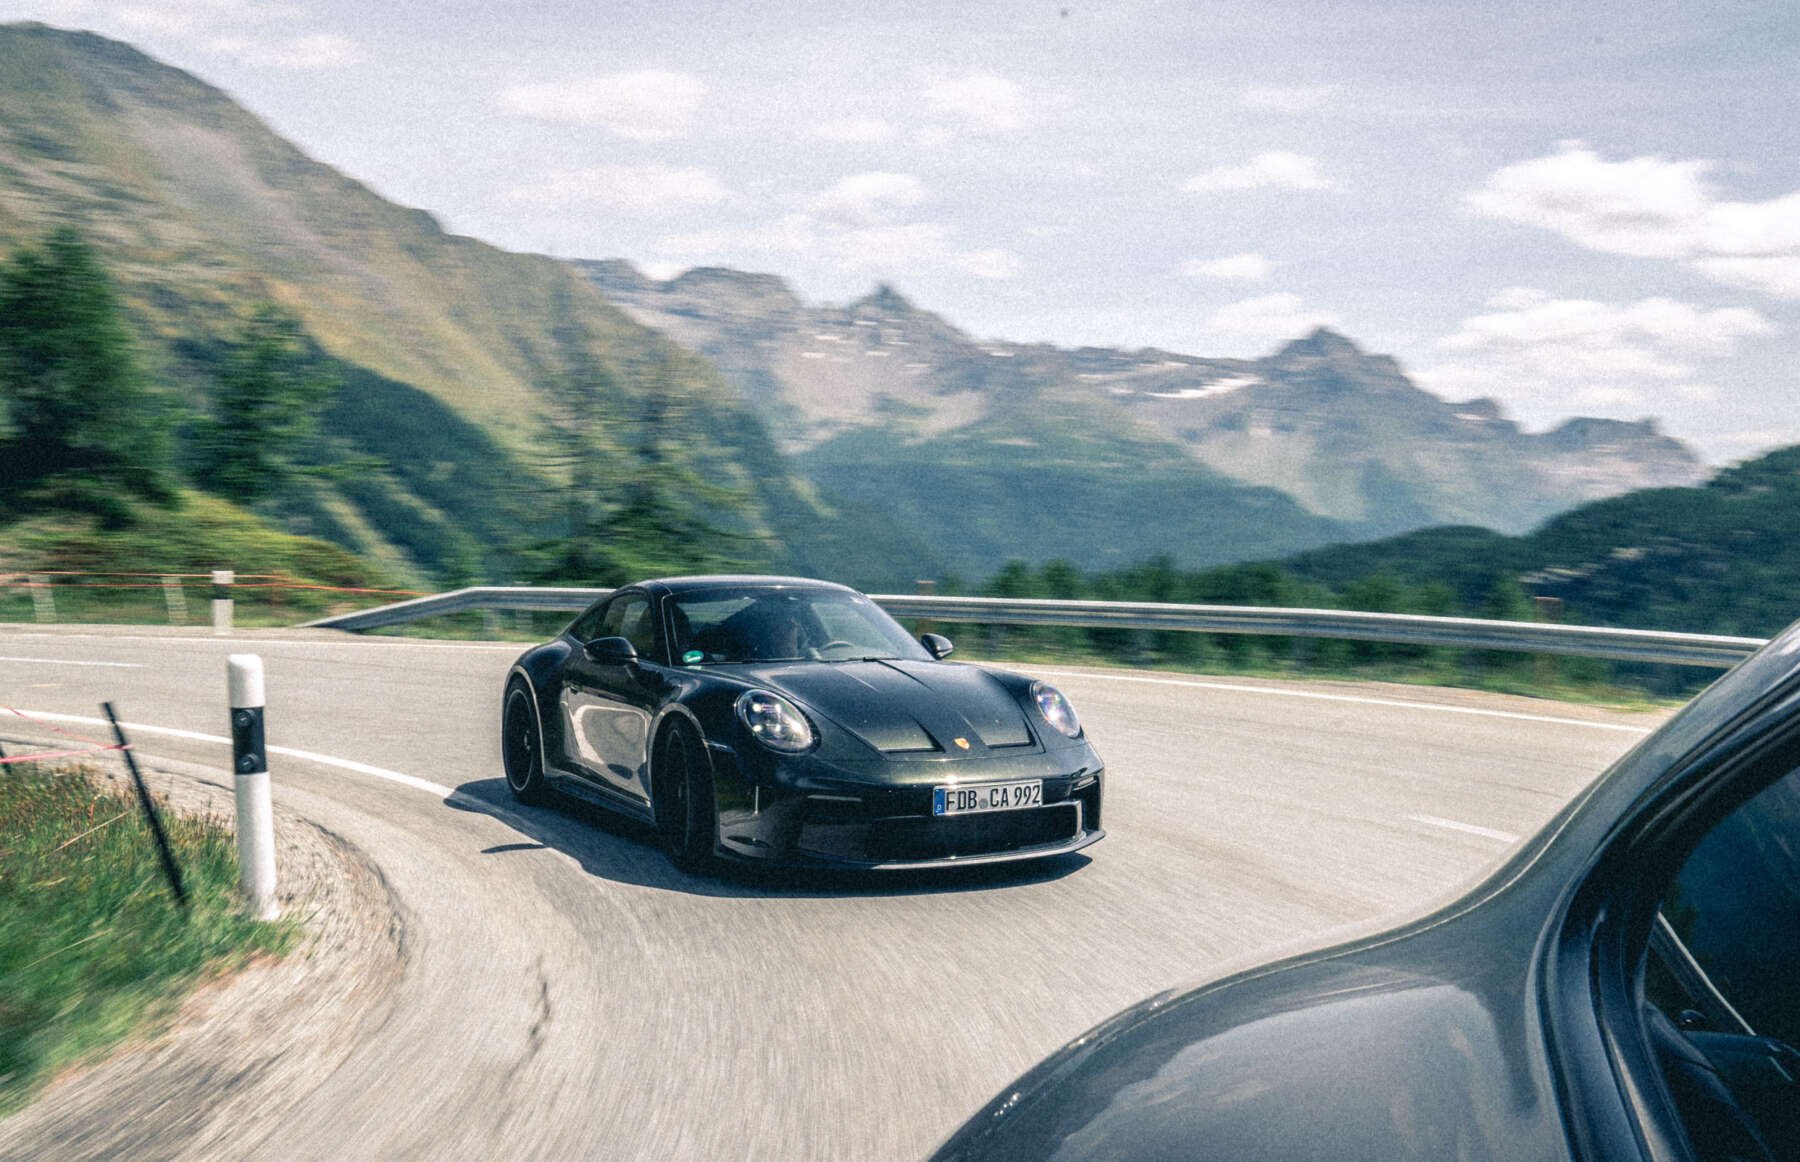 Sickalps – Show Porsche drivers the mountains